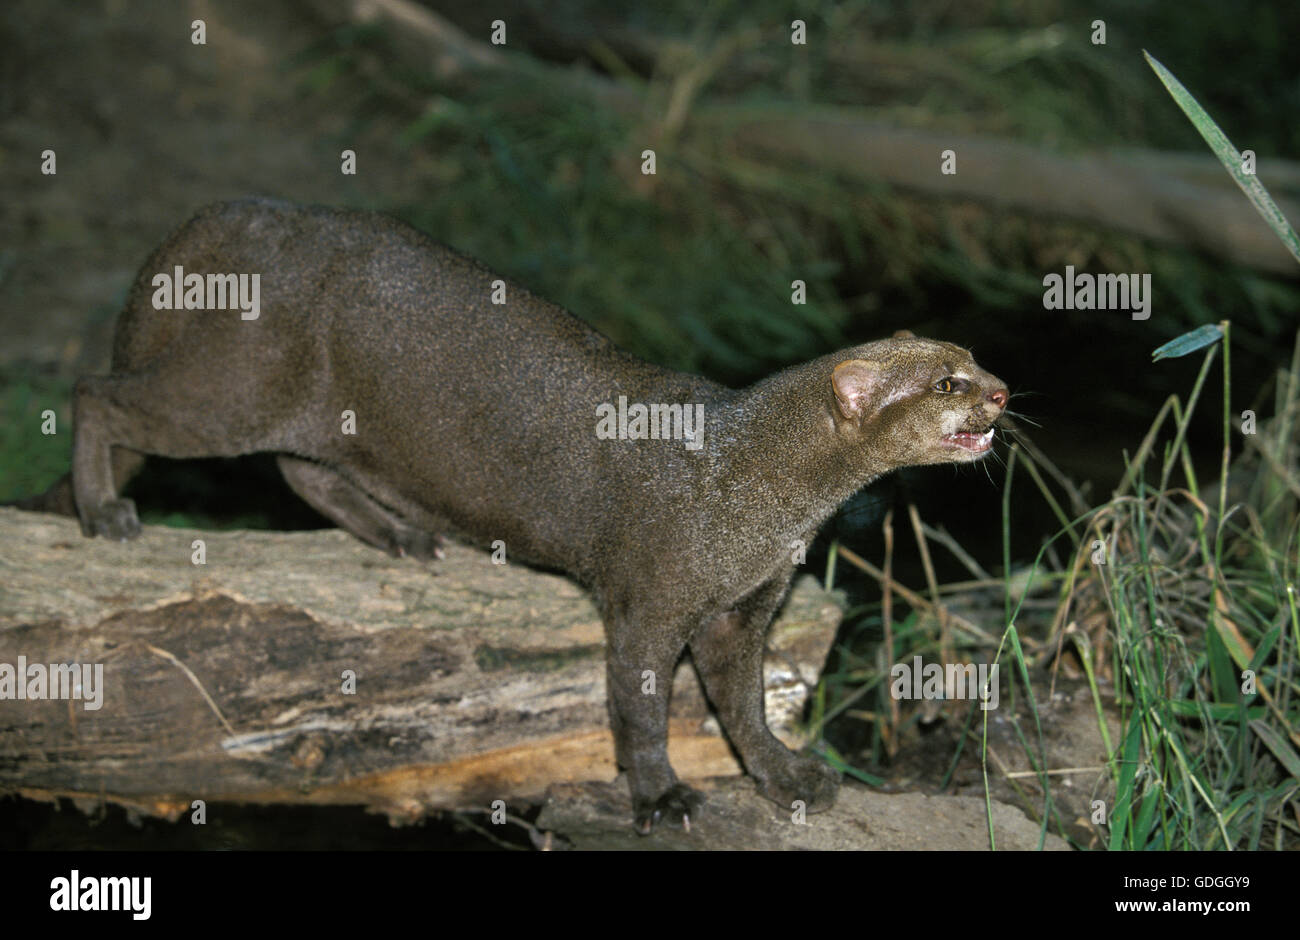 Puma yagouaroundi hi-res stock photography and images - Alamy